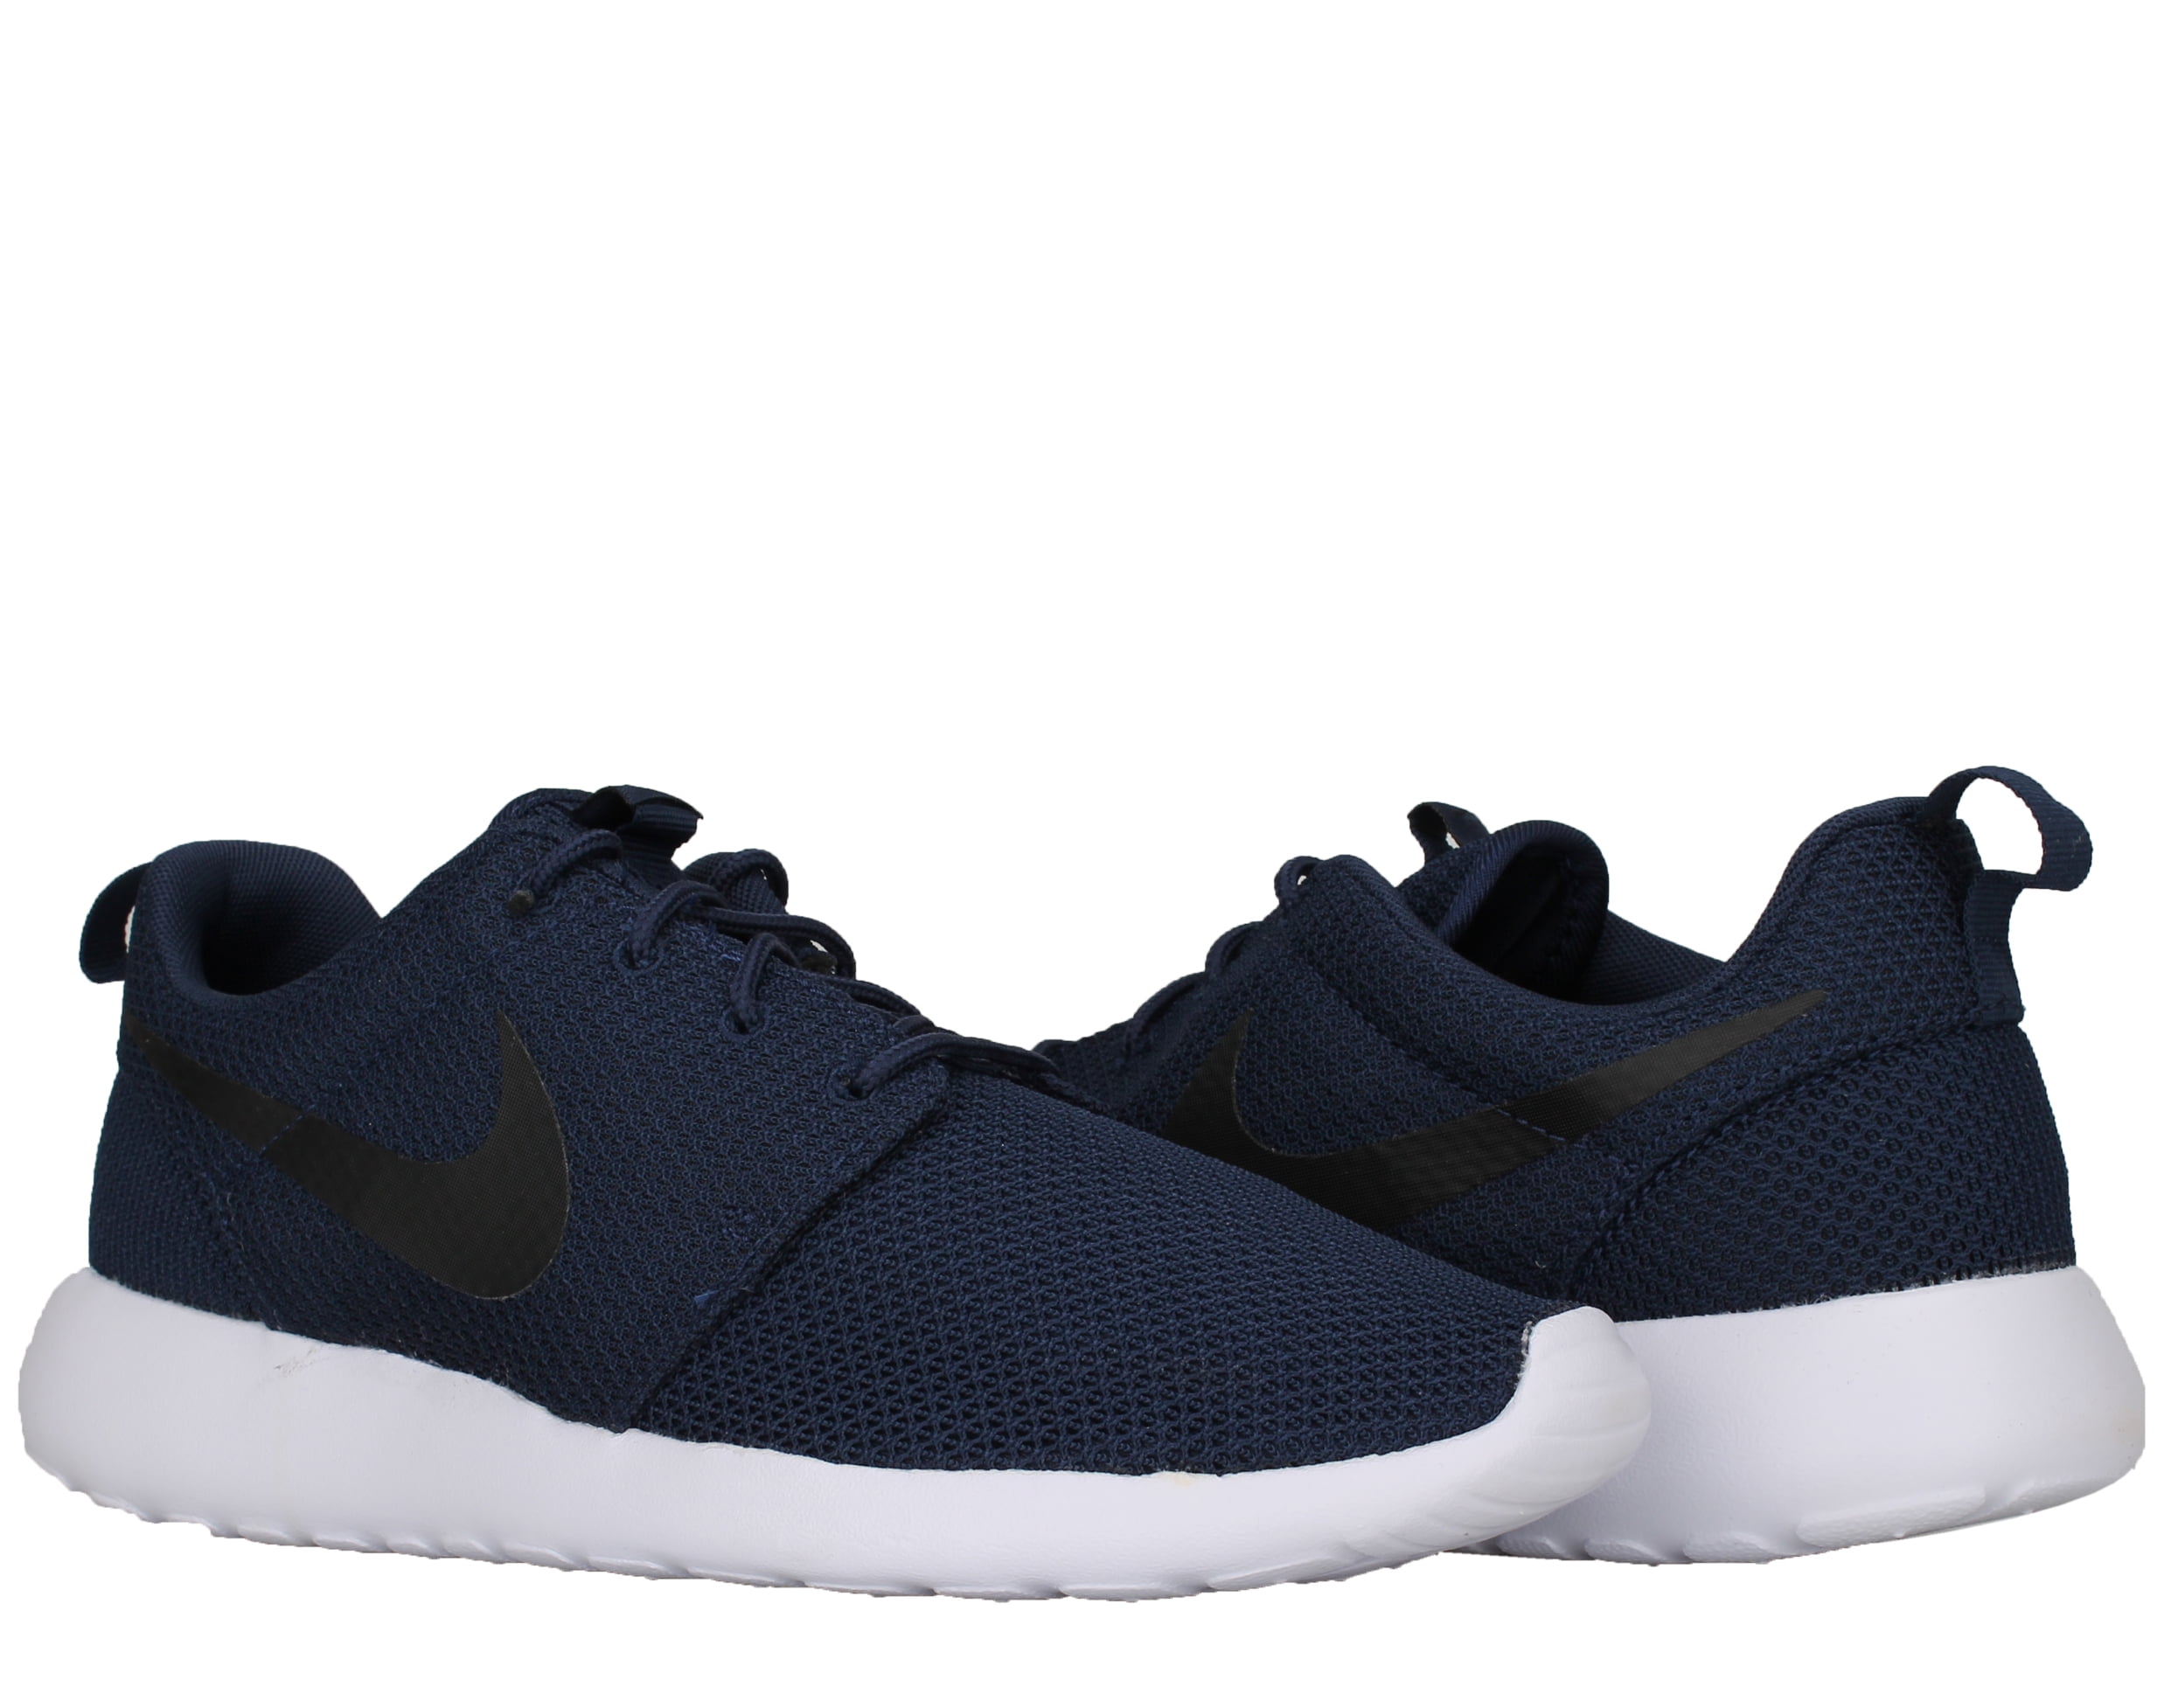 Nike 511881-405: Roshe Run Sneakers (8.5 D(M) US) - Walmart.com